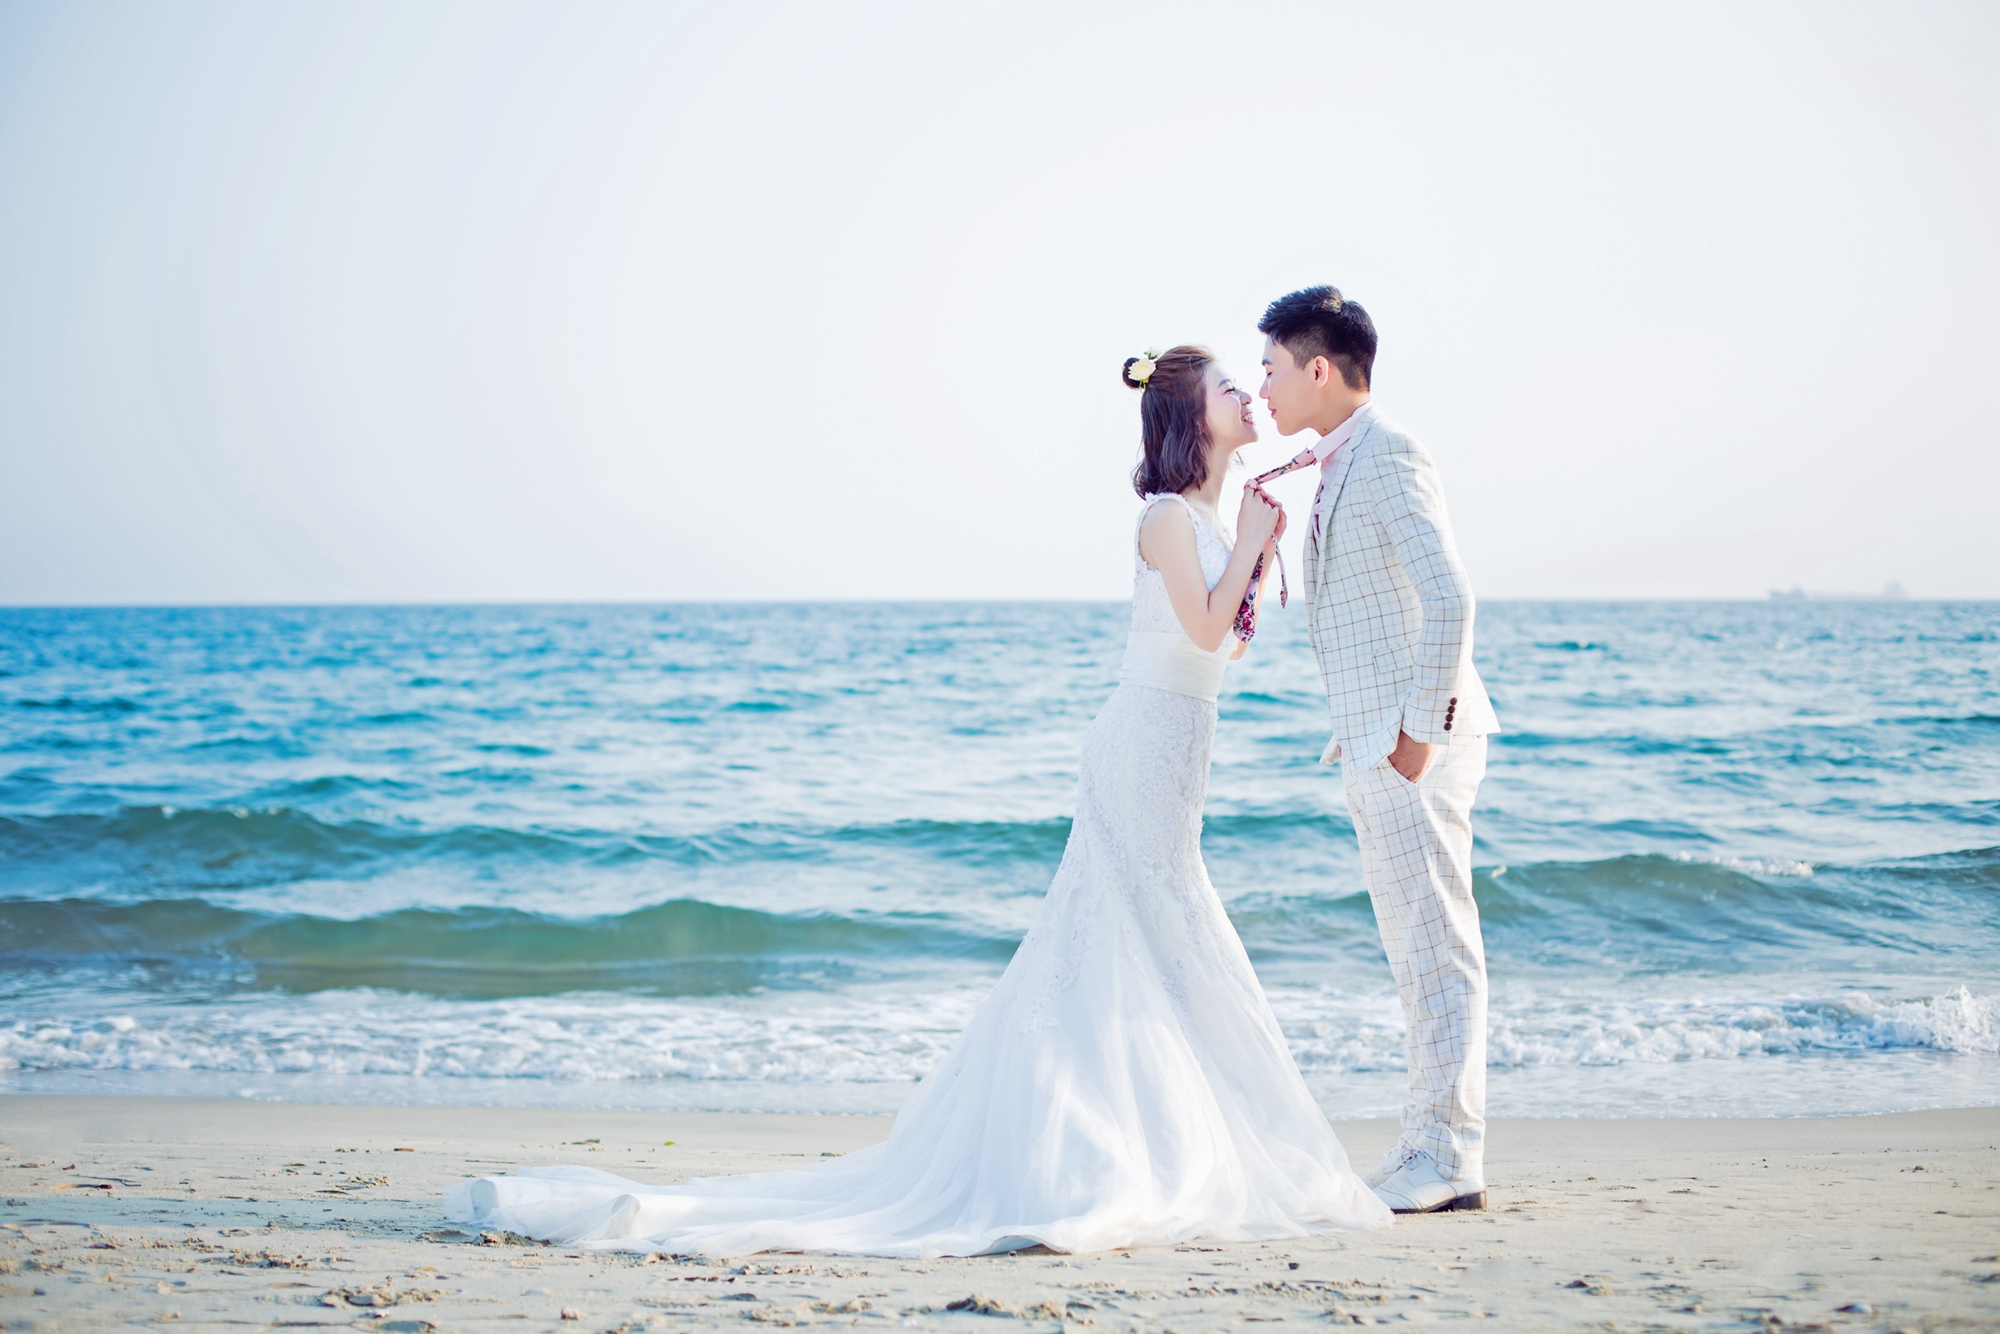 格瑞尔海岸沙滩婚纱照